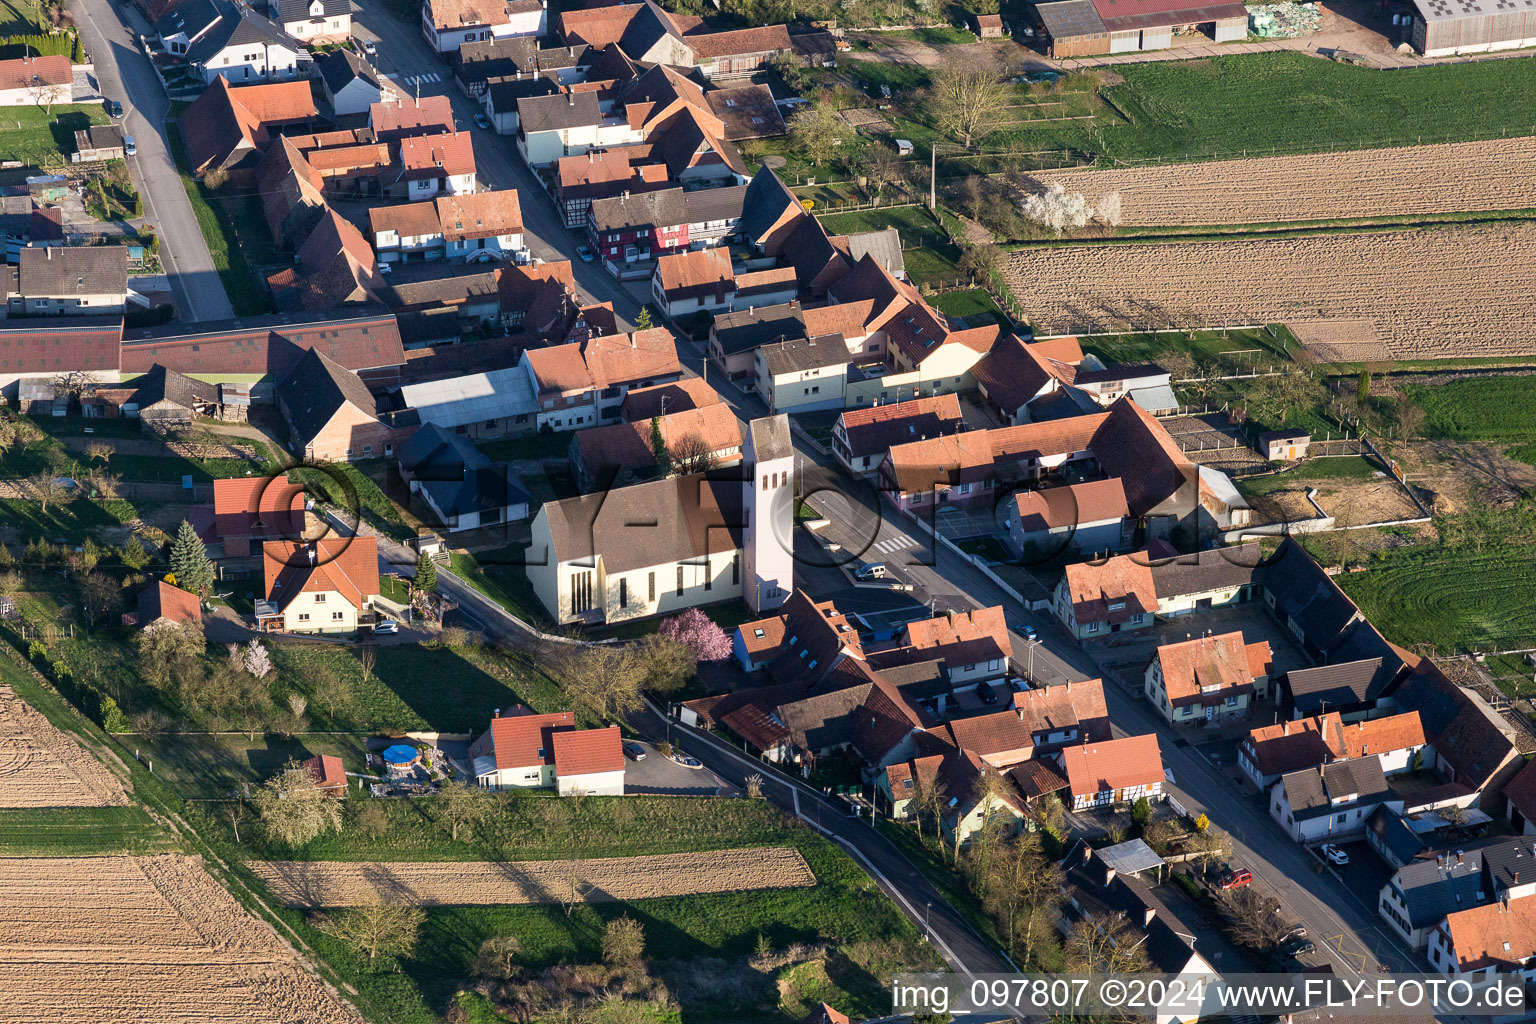 Vue aérienne de Bâtiment d'église au centre du village à Oberrœdern dans le département Bas Rhin, France